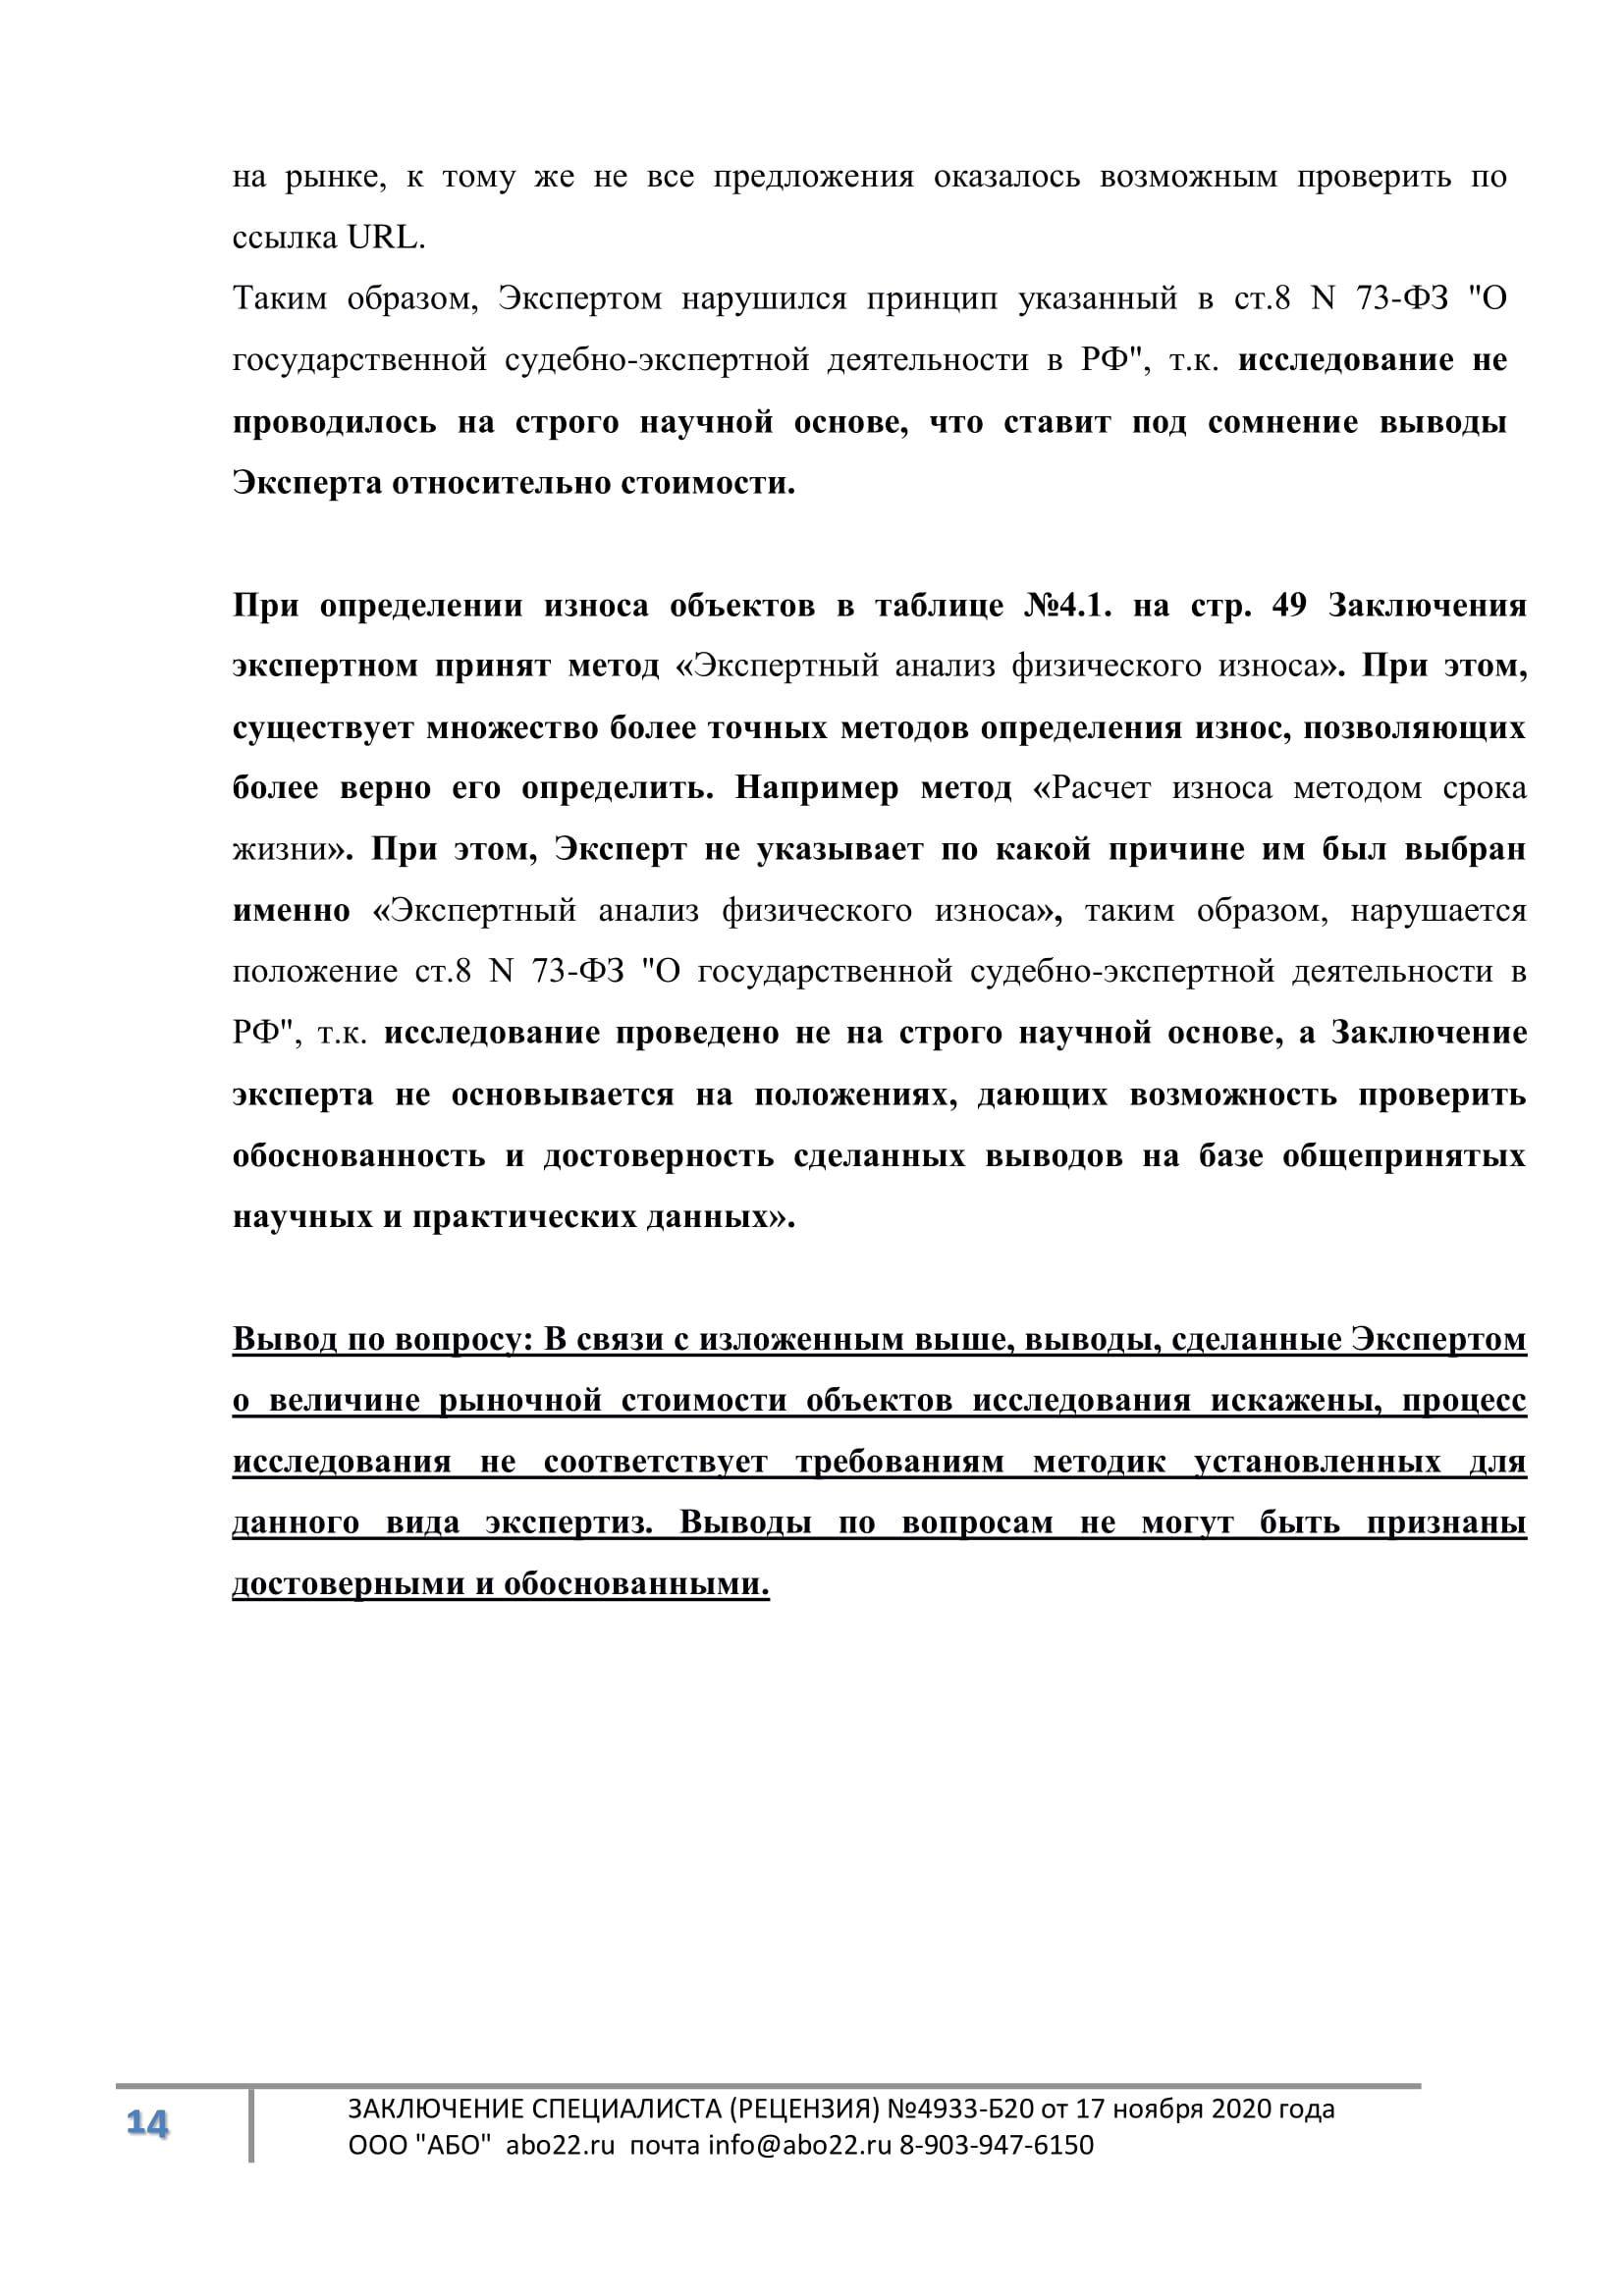 Рецензии на экспертные заключения судебных экспертов. Рецензия на судебную экспертизу в Екатеринбурге